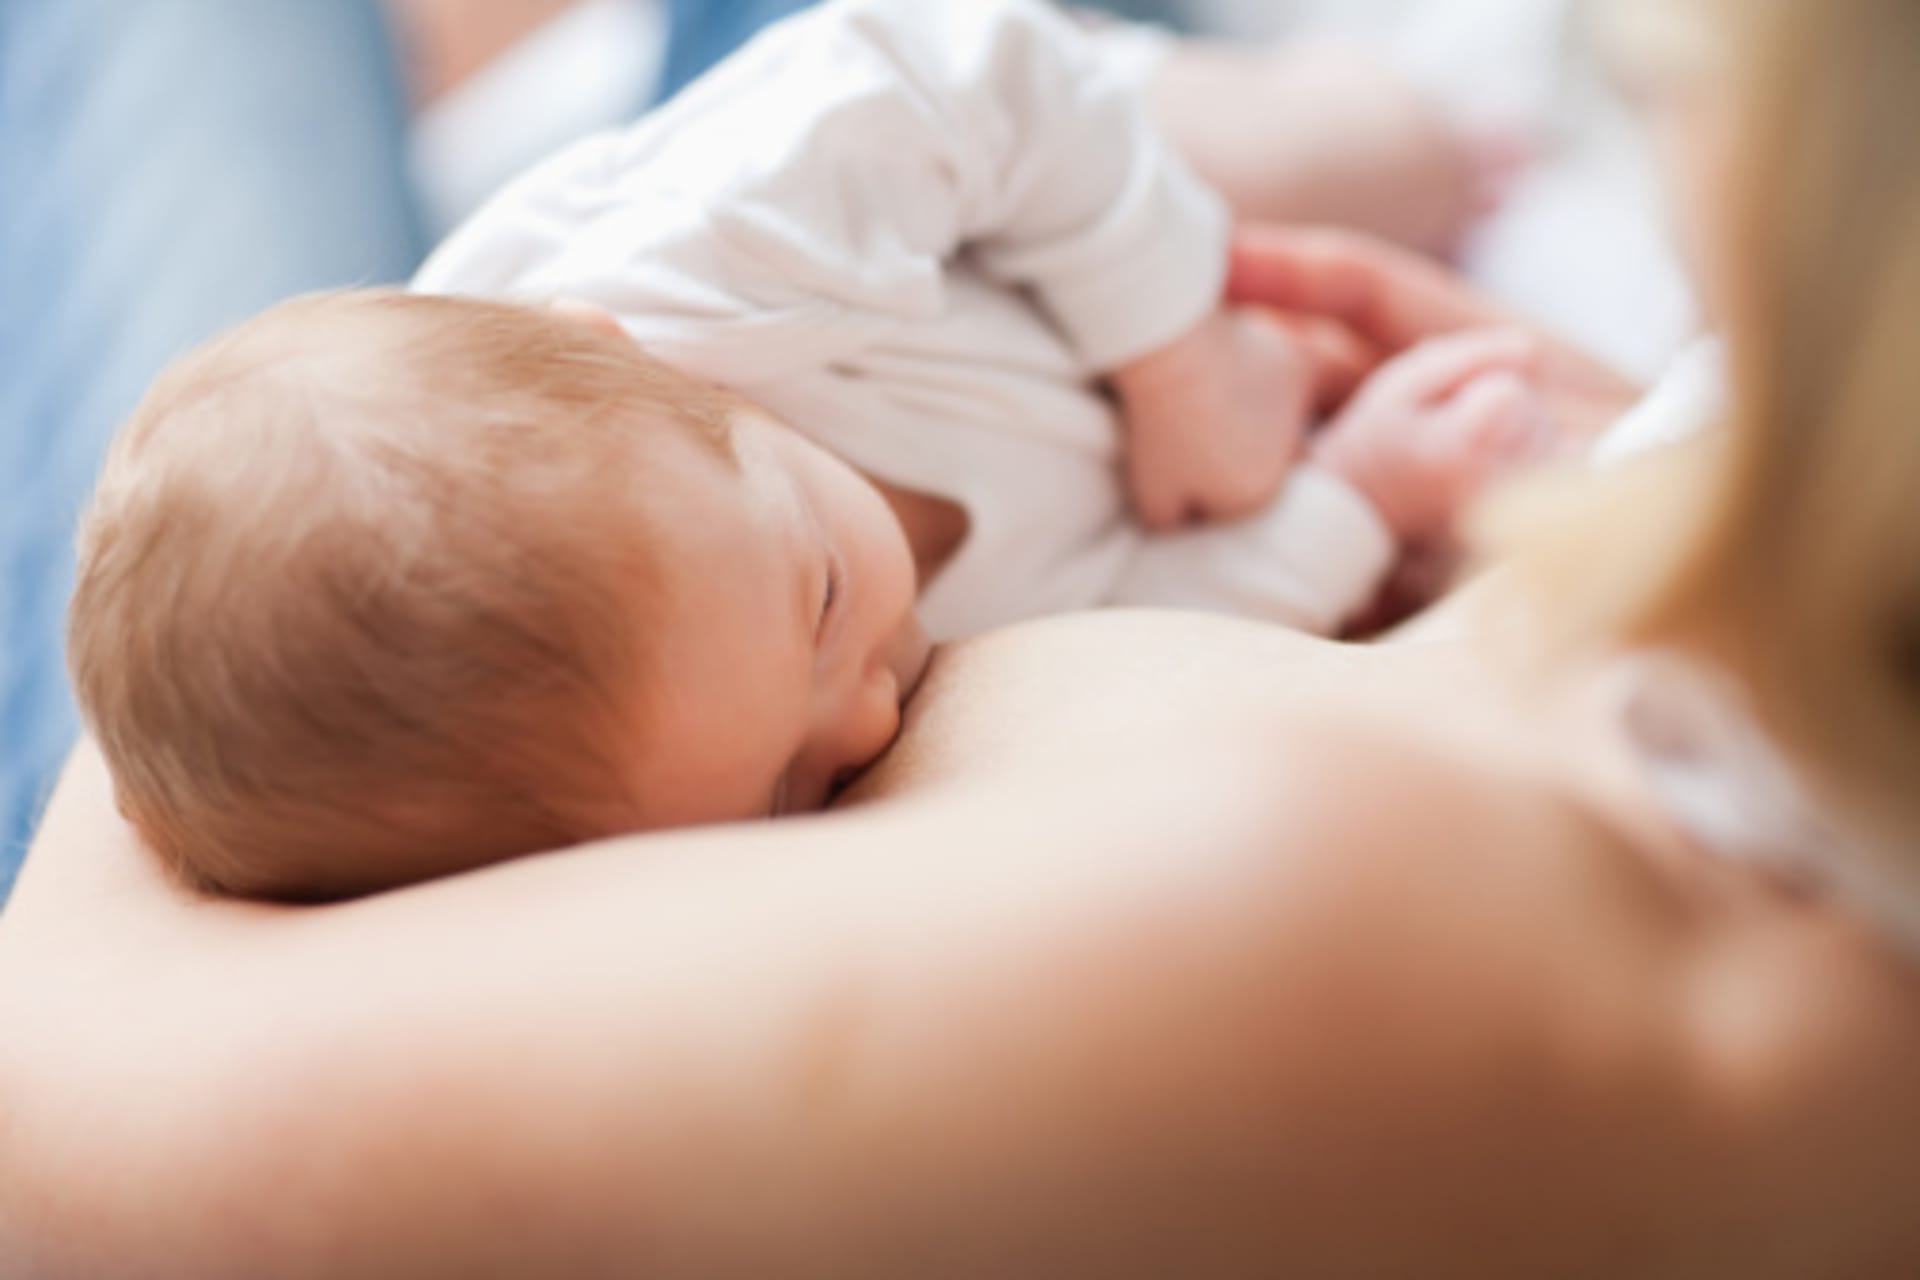 V Česku své děti kojí 85 % matek a průměrná délka kojení je 8,5 měsíce.